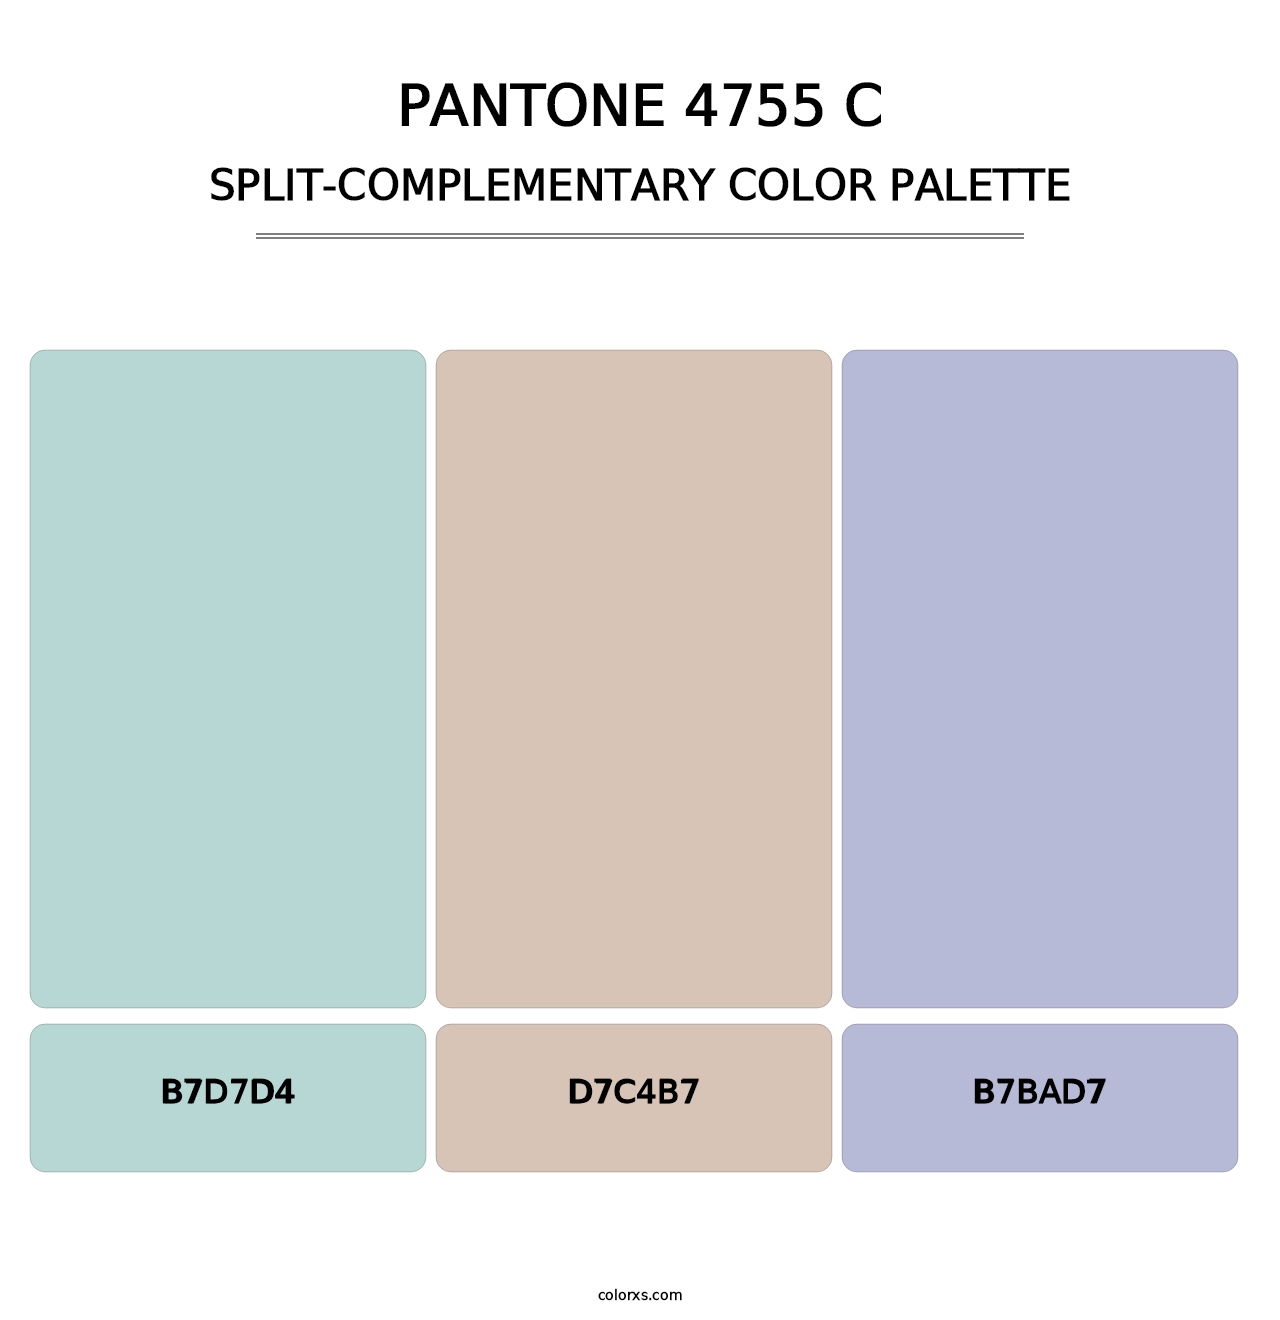 PANTONE 4755 C - Split-Complementary Color Palette